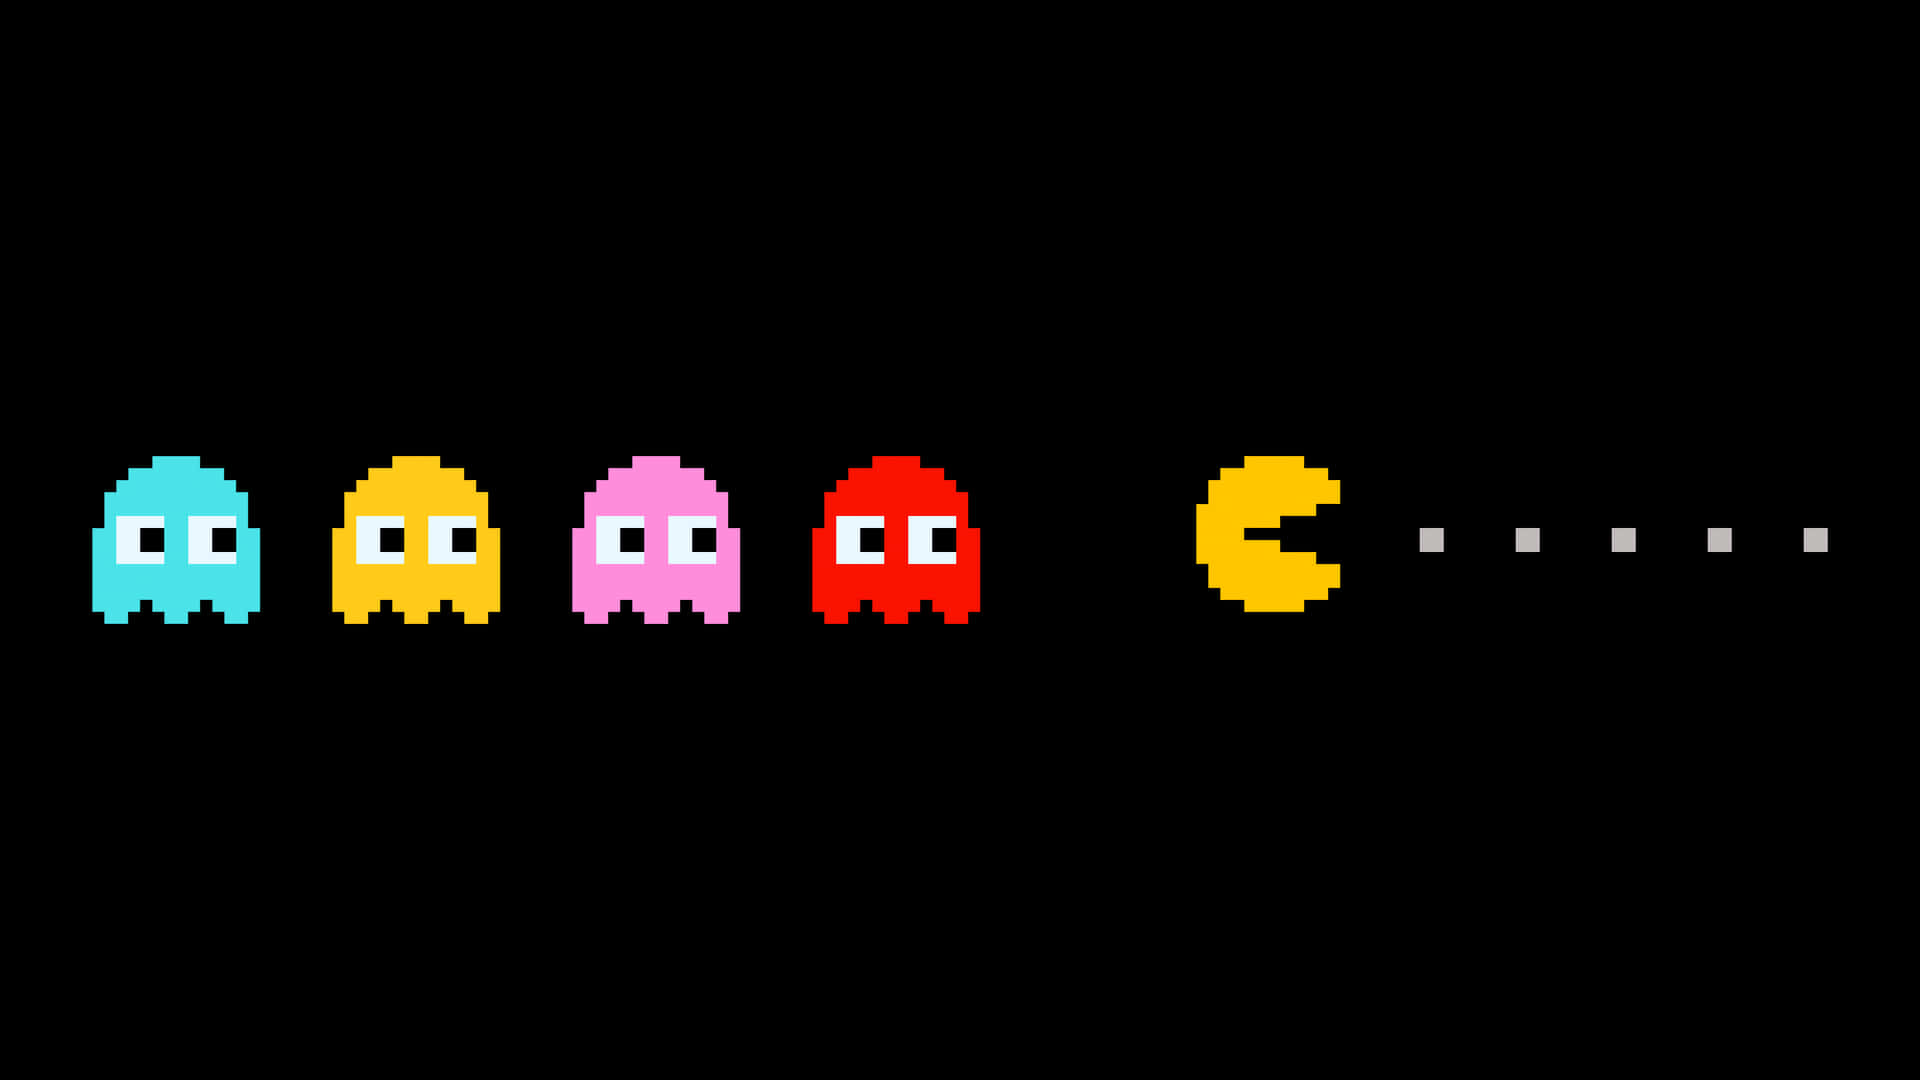 Pacman Pixel Art Wallpaper